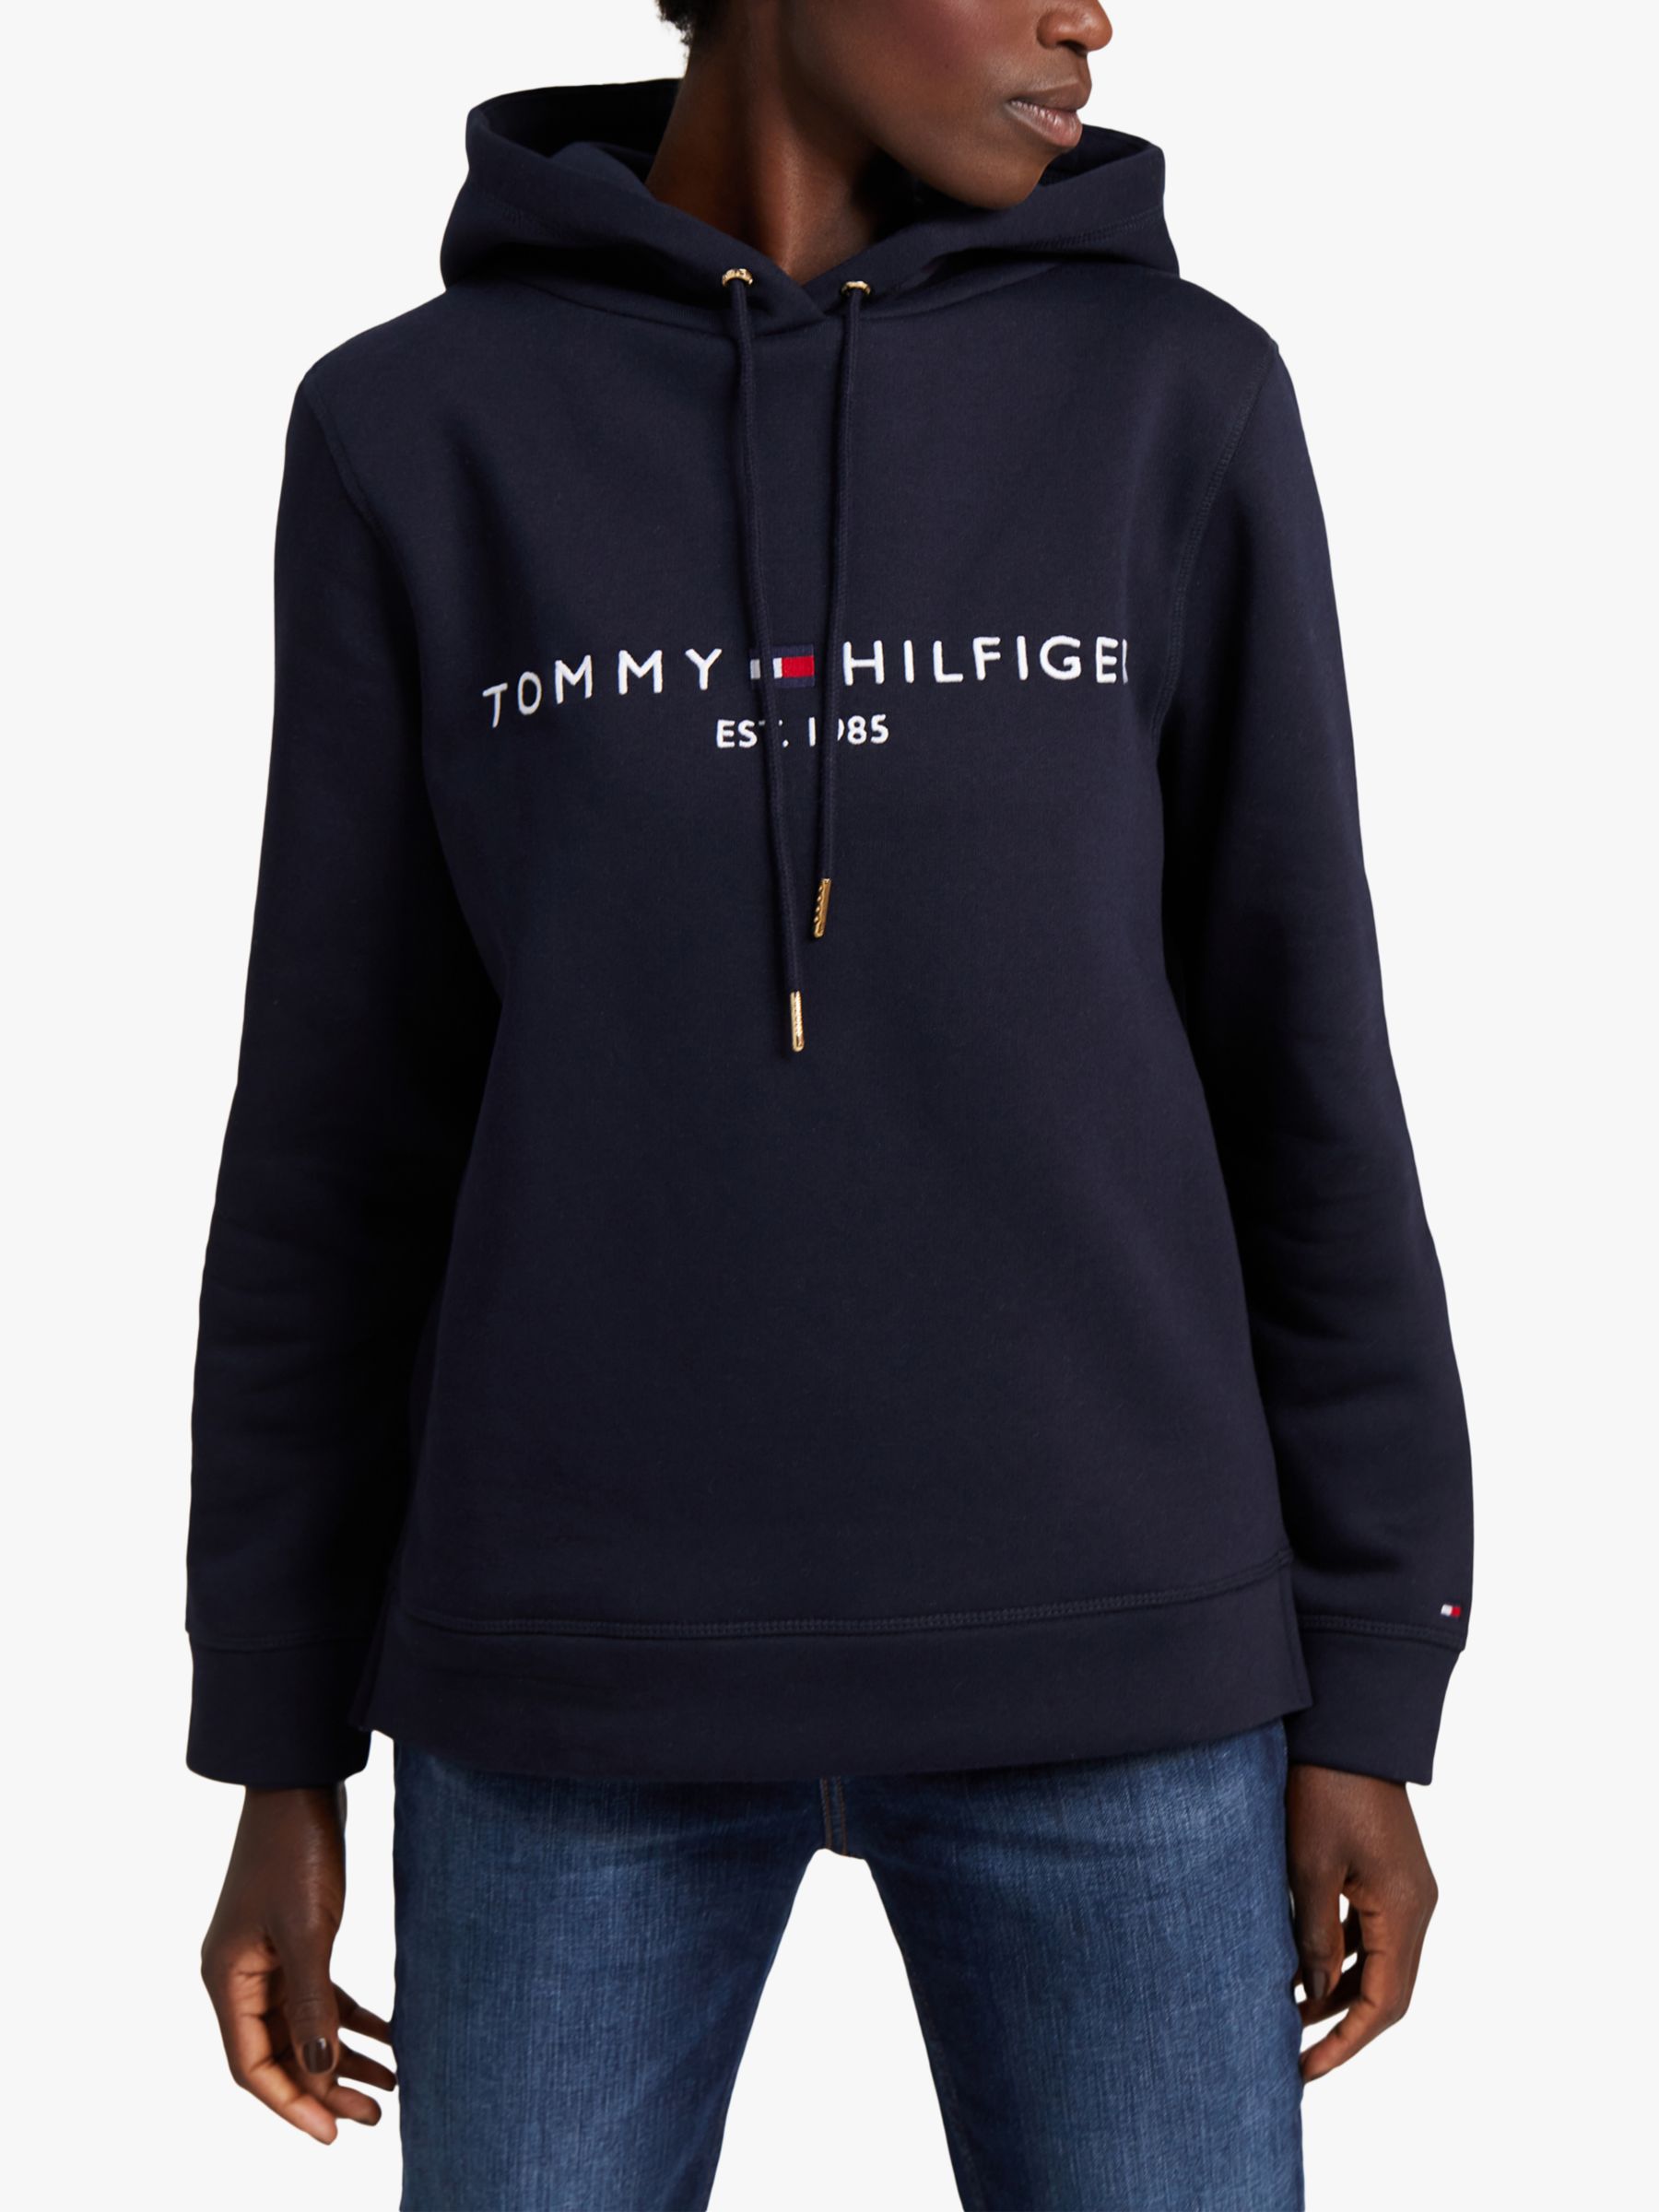 Tommy Hilfiger - Girls Blue Cotton Sweatshirt